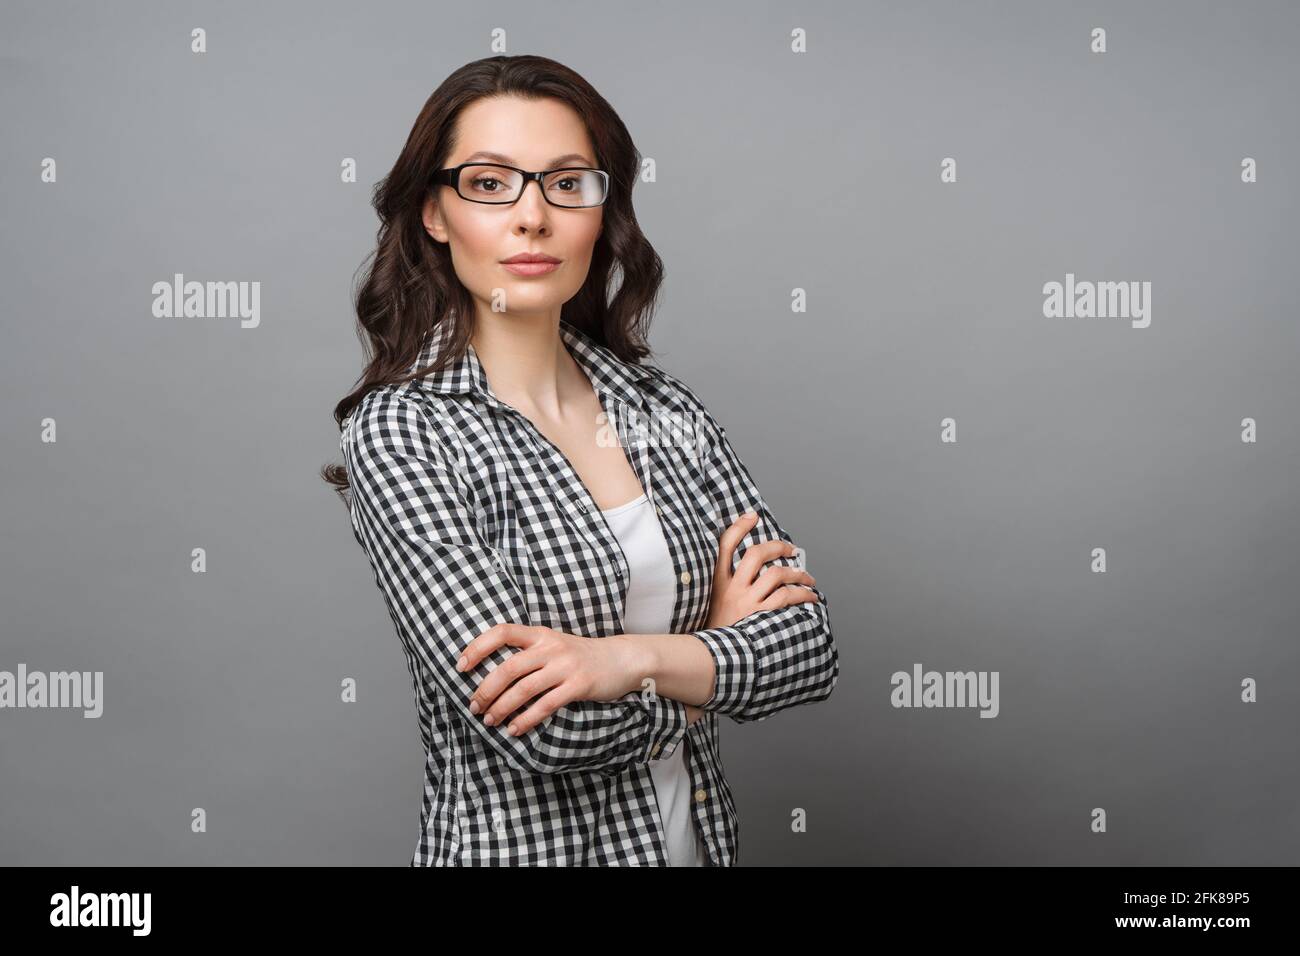 Ritratto aziendale di una giovane donna. Una bruna affascinante con occhiali guarda la macchina fotografica, incrociando le braccia sul petto. Foto Stock